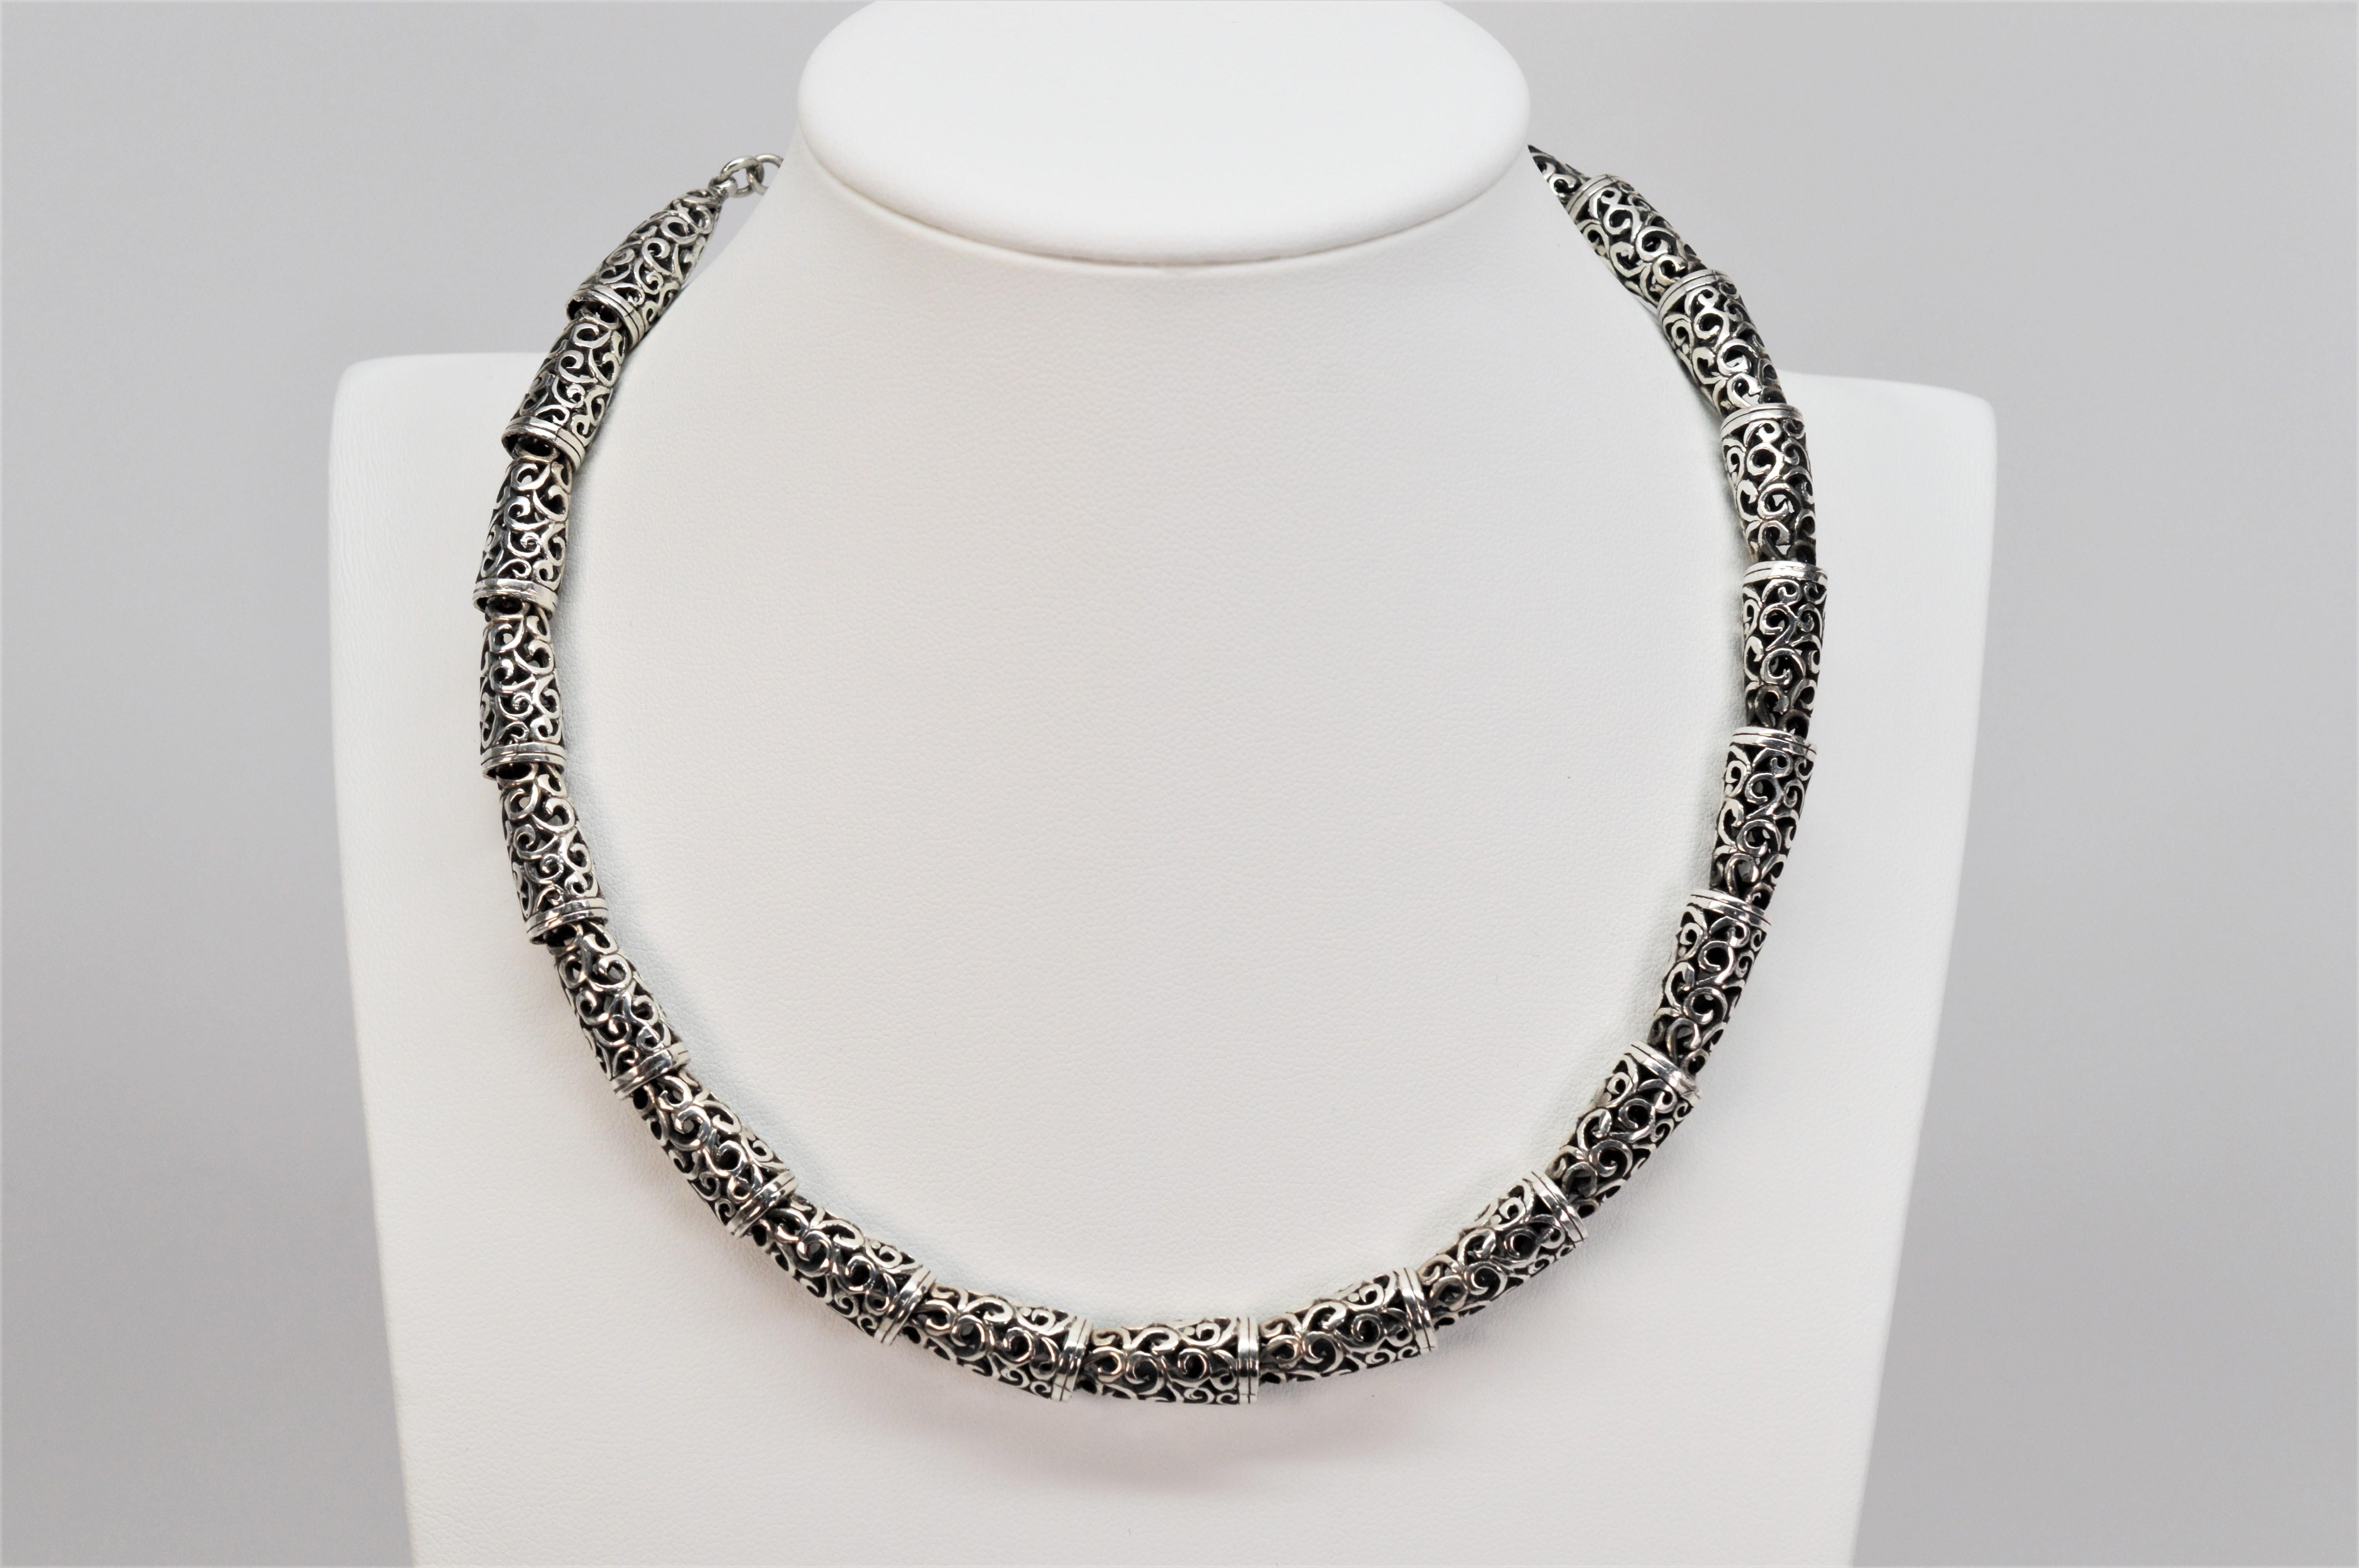 Ein dekoratives Schneckenmuster in einzelnen Gliedern aus Sterlingsilber macht diese kunstvolle Halskette aus. Das ausgeschnittene Schattenmuster verleiht diesem interessanten Silberstück eine kunstvolle Dimension. Die Länge ist zwischen 15 und 17